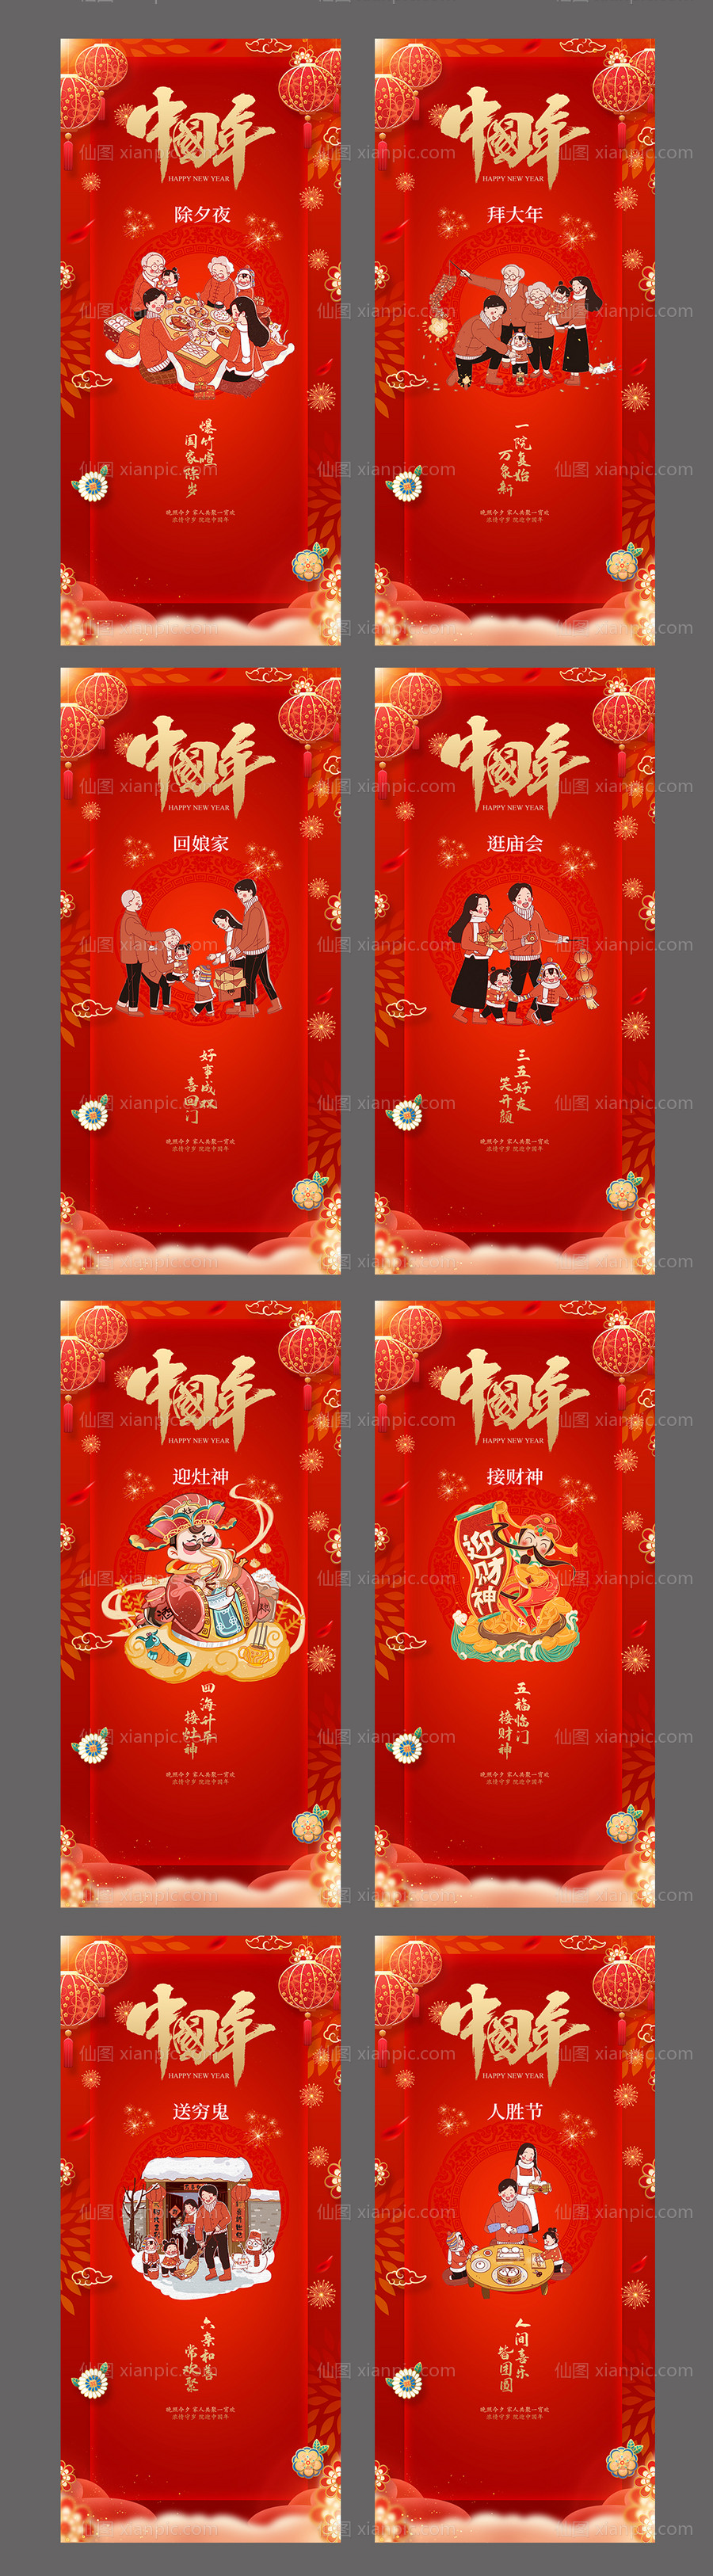 素材乐-春节除夕初一至初七系列海报